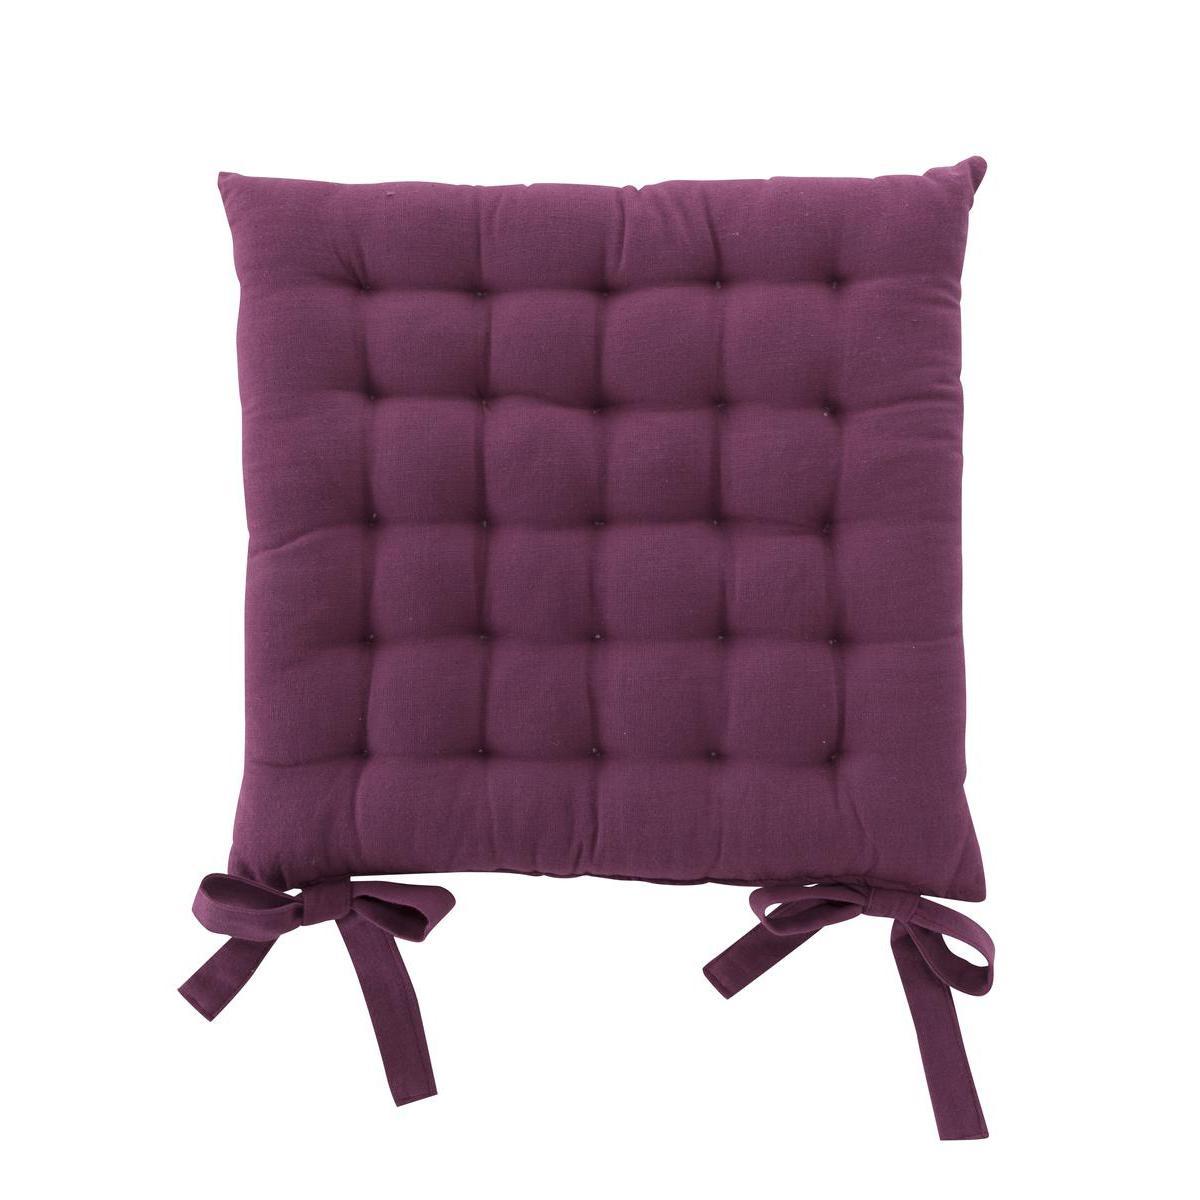 Galette de chaise capitonnée à nouettes - 100 % coton - 40 x 40 cm - Framboise